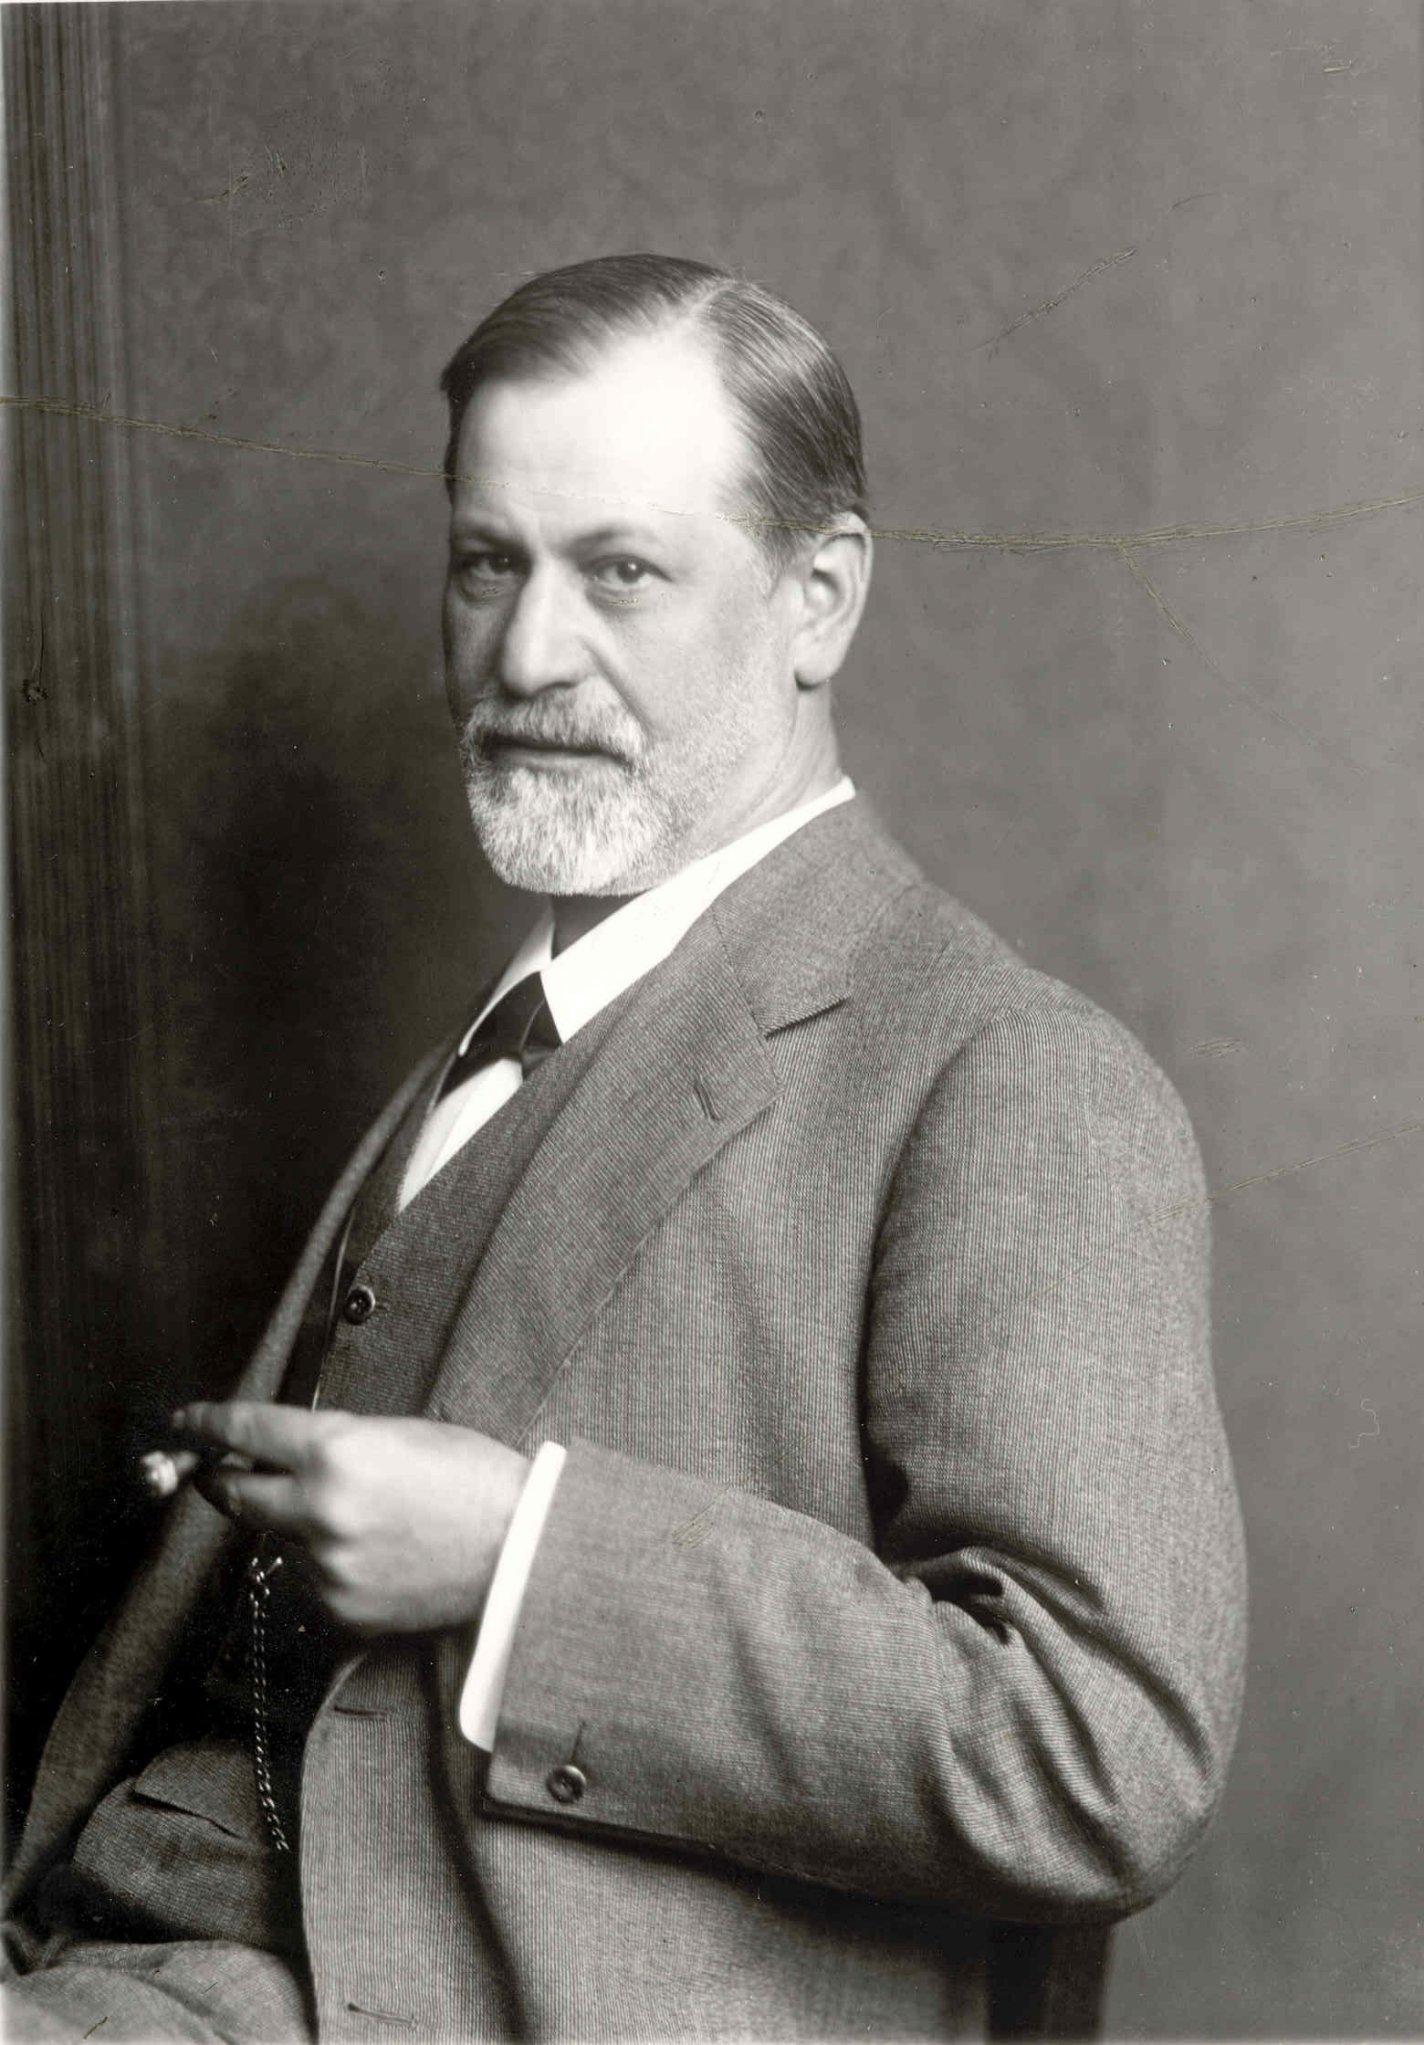 Sigmund Freud.jpg